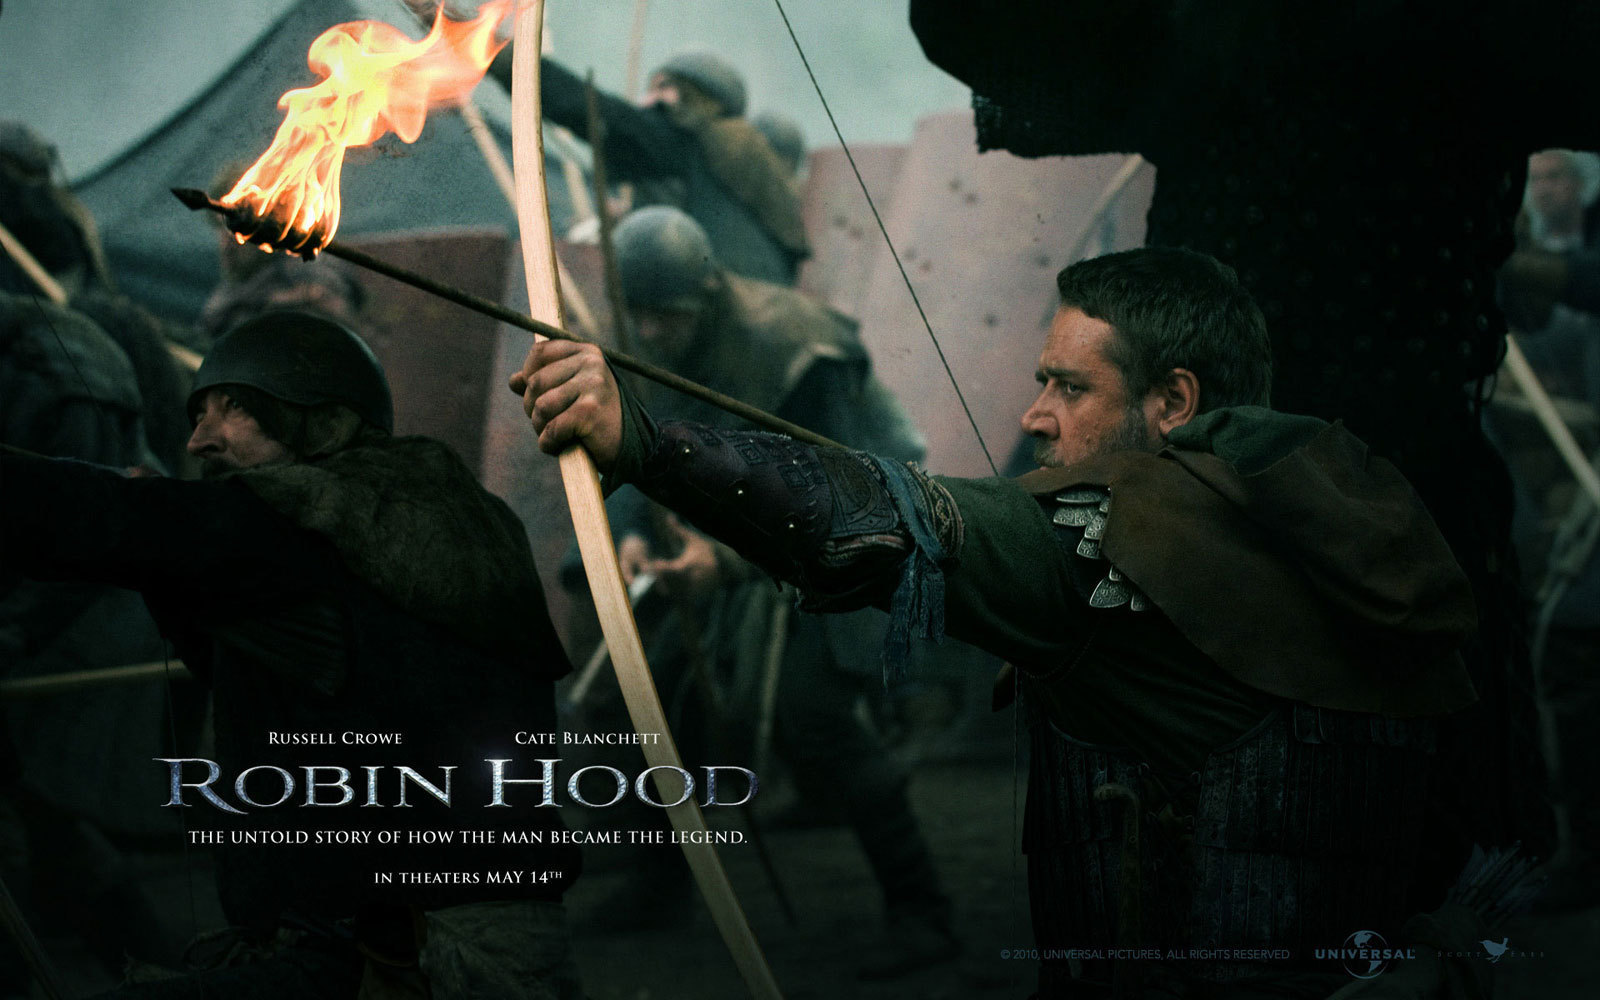 Robin Hood - Robin Hood (2010) Wallpaper (12210426) - Fanpop